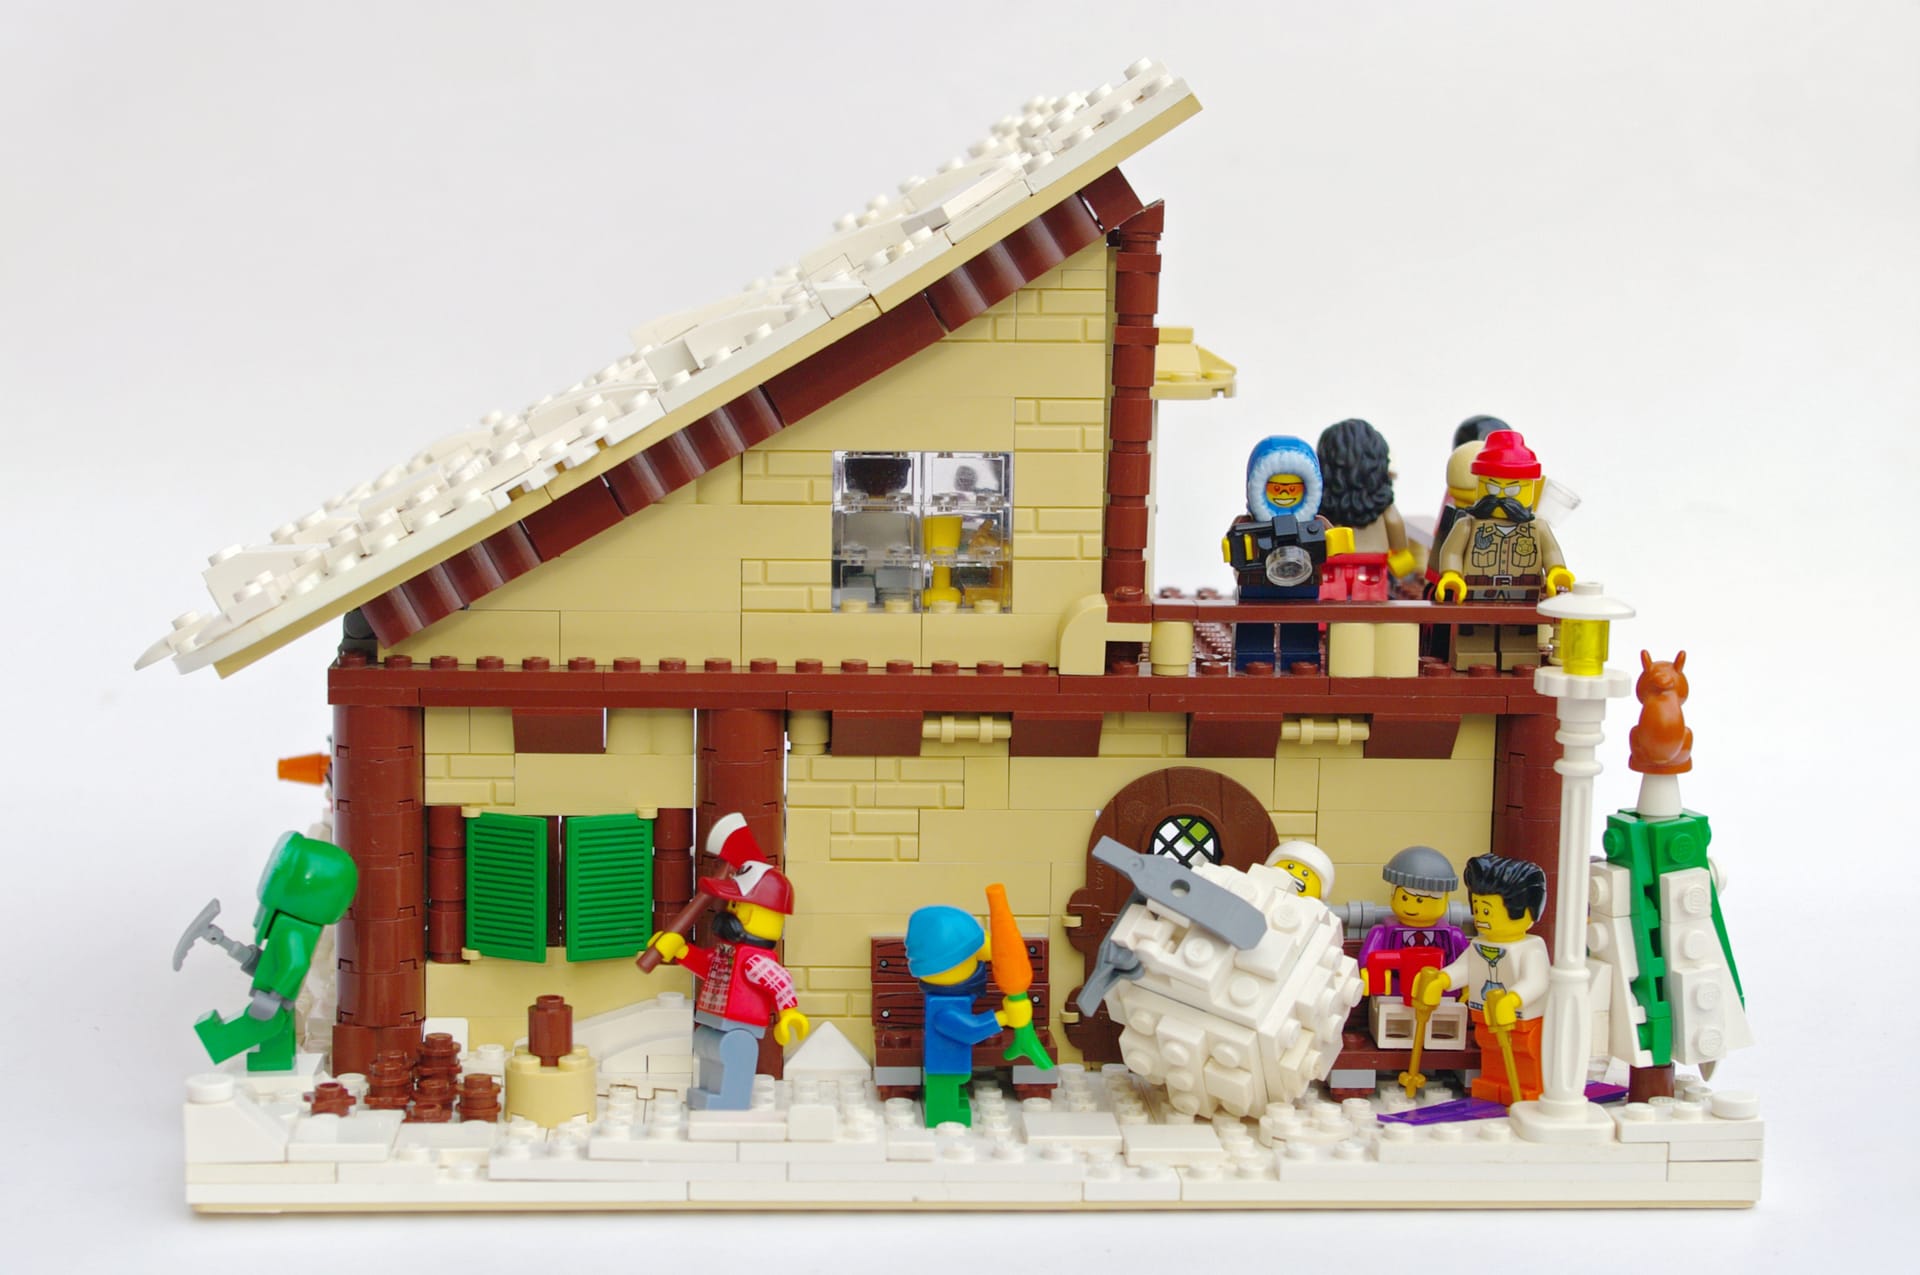 Concurs Winter Brickland – Creatia 8: Cabin in Winter